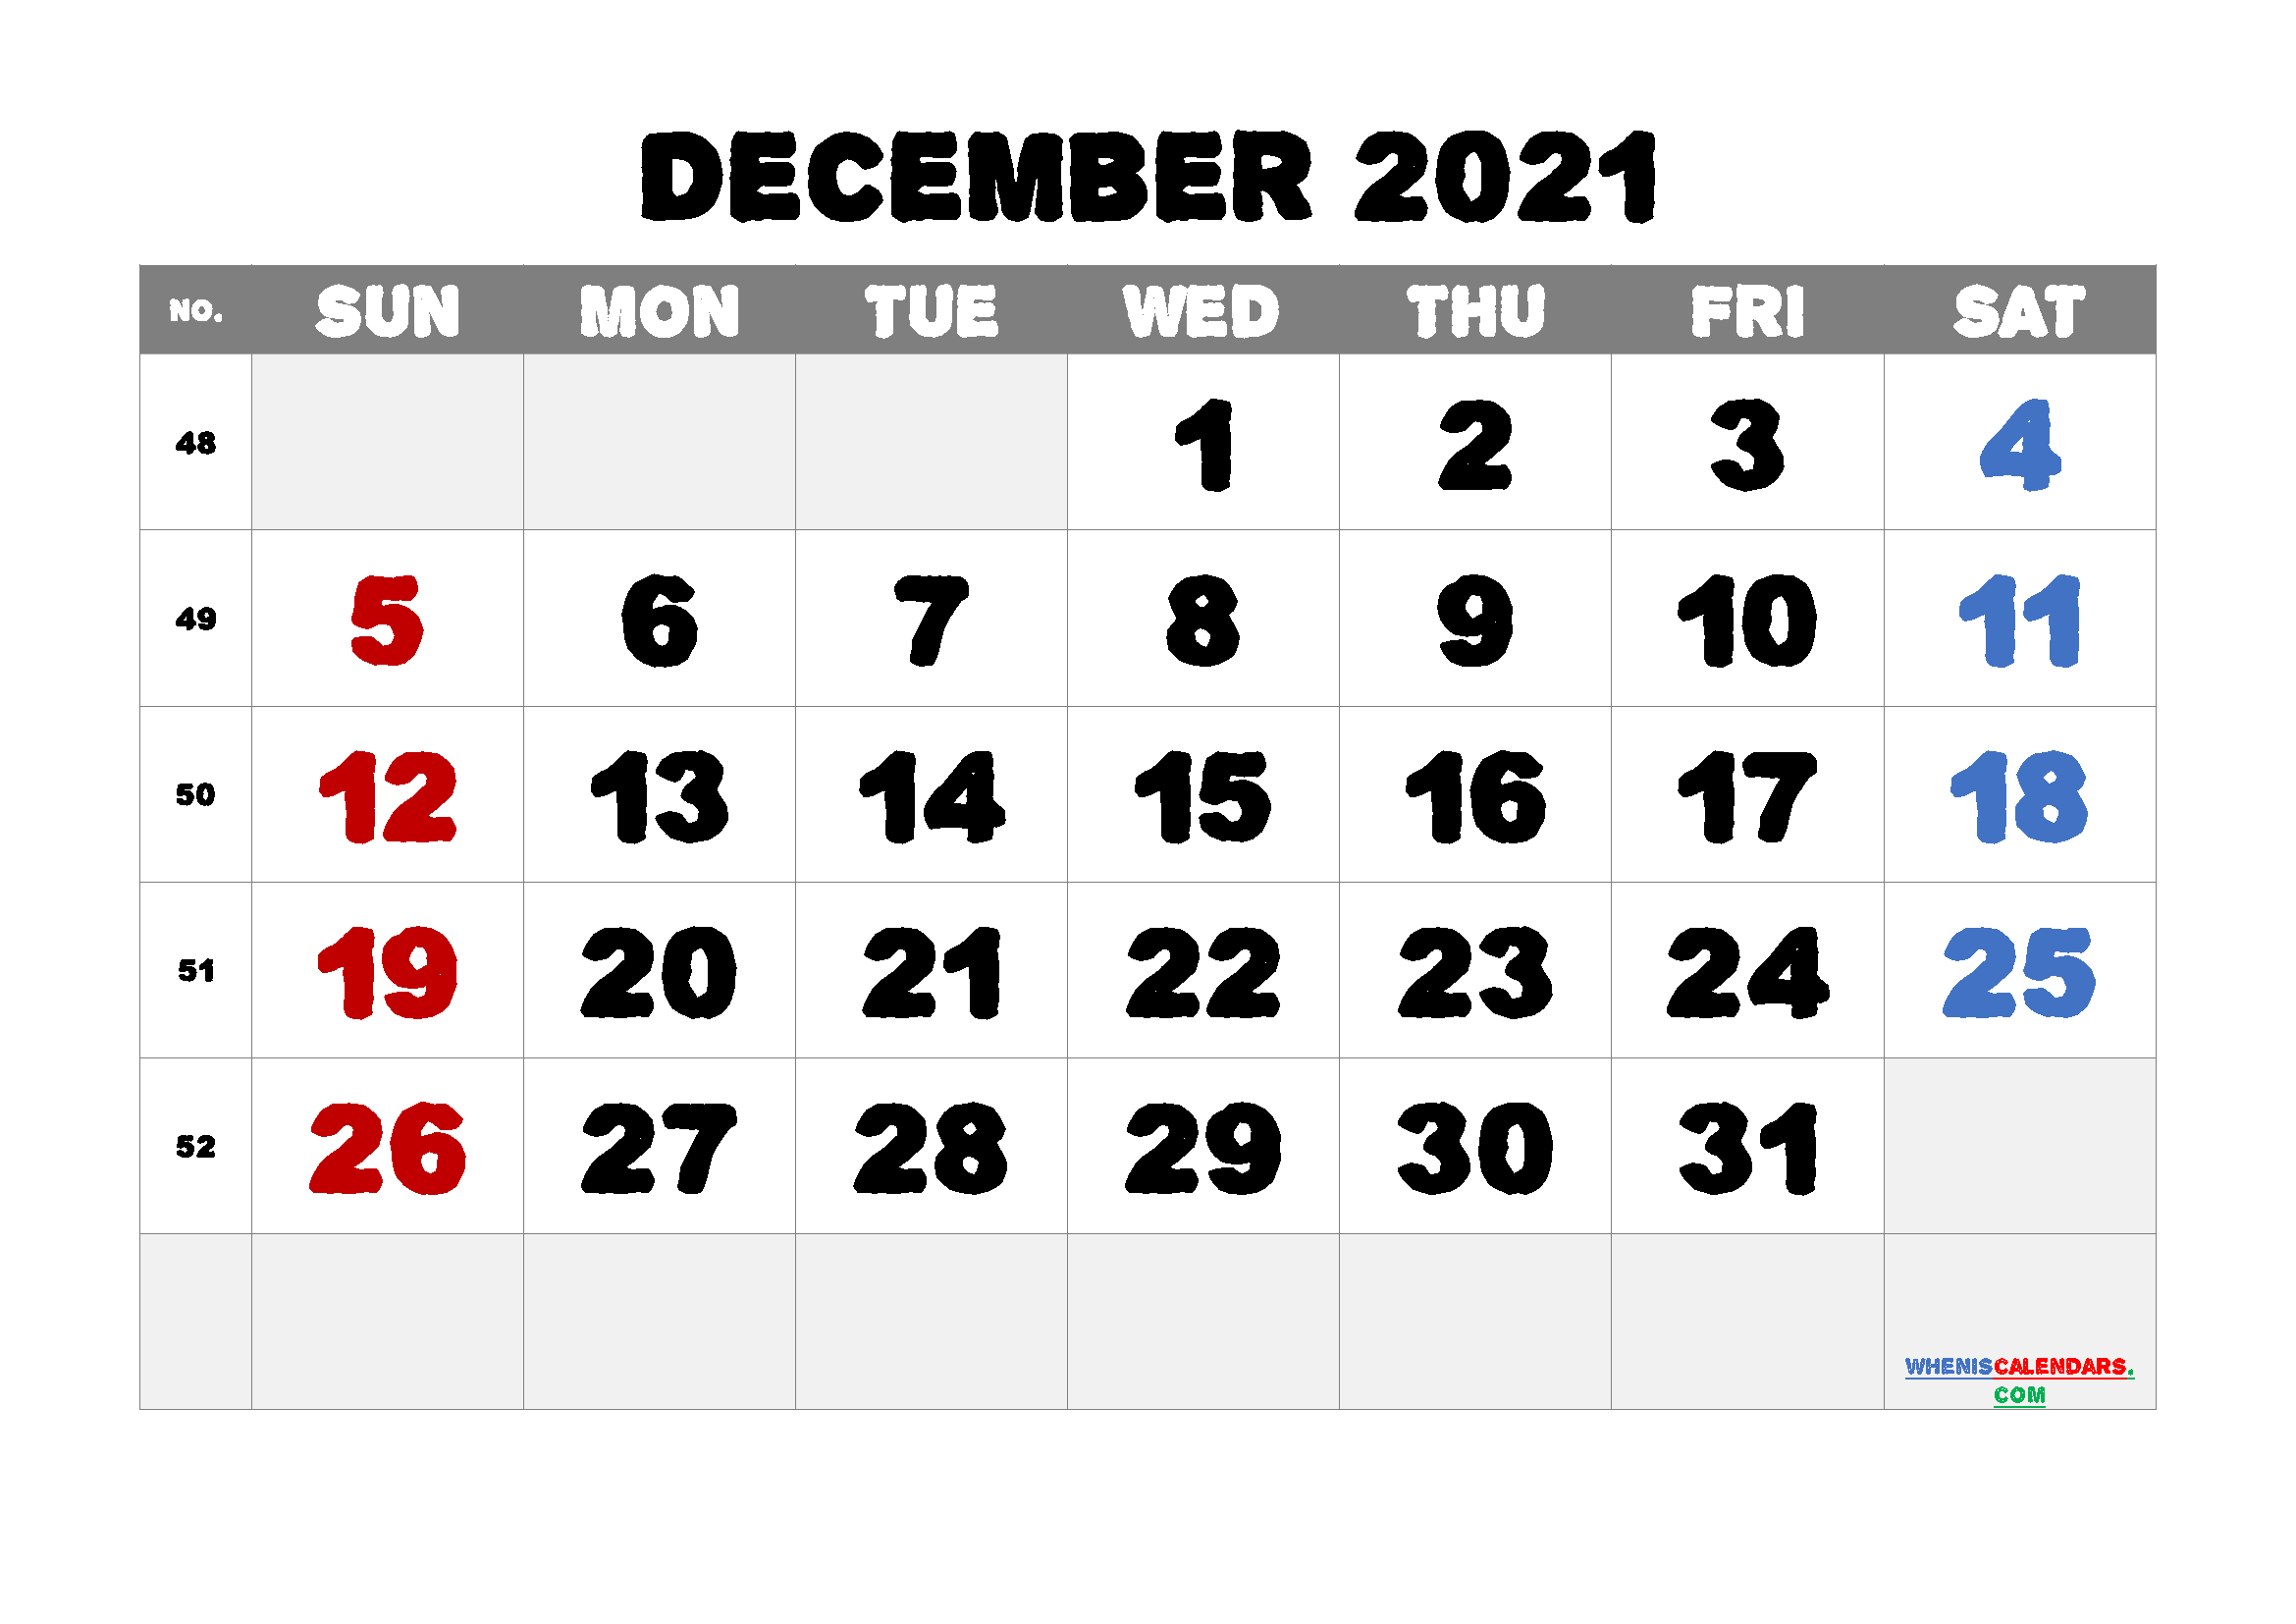 Dec 2021 Calendar Printable Customize and Print